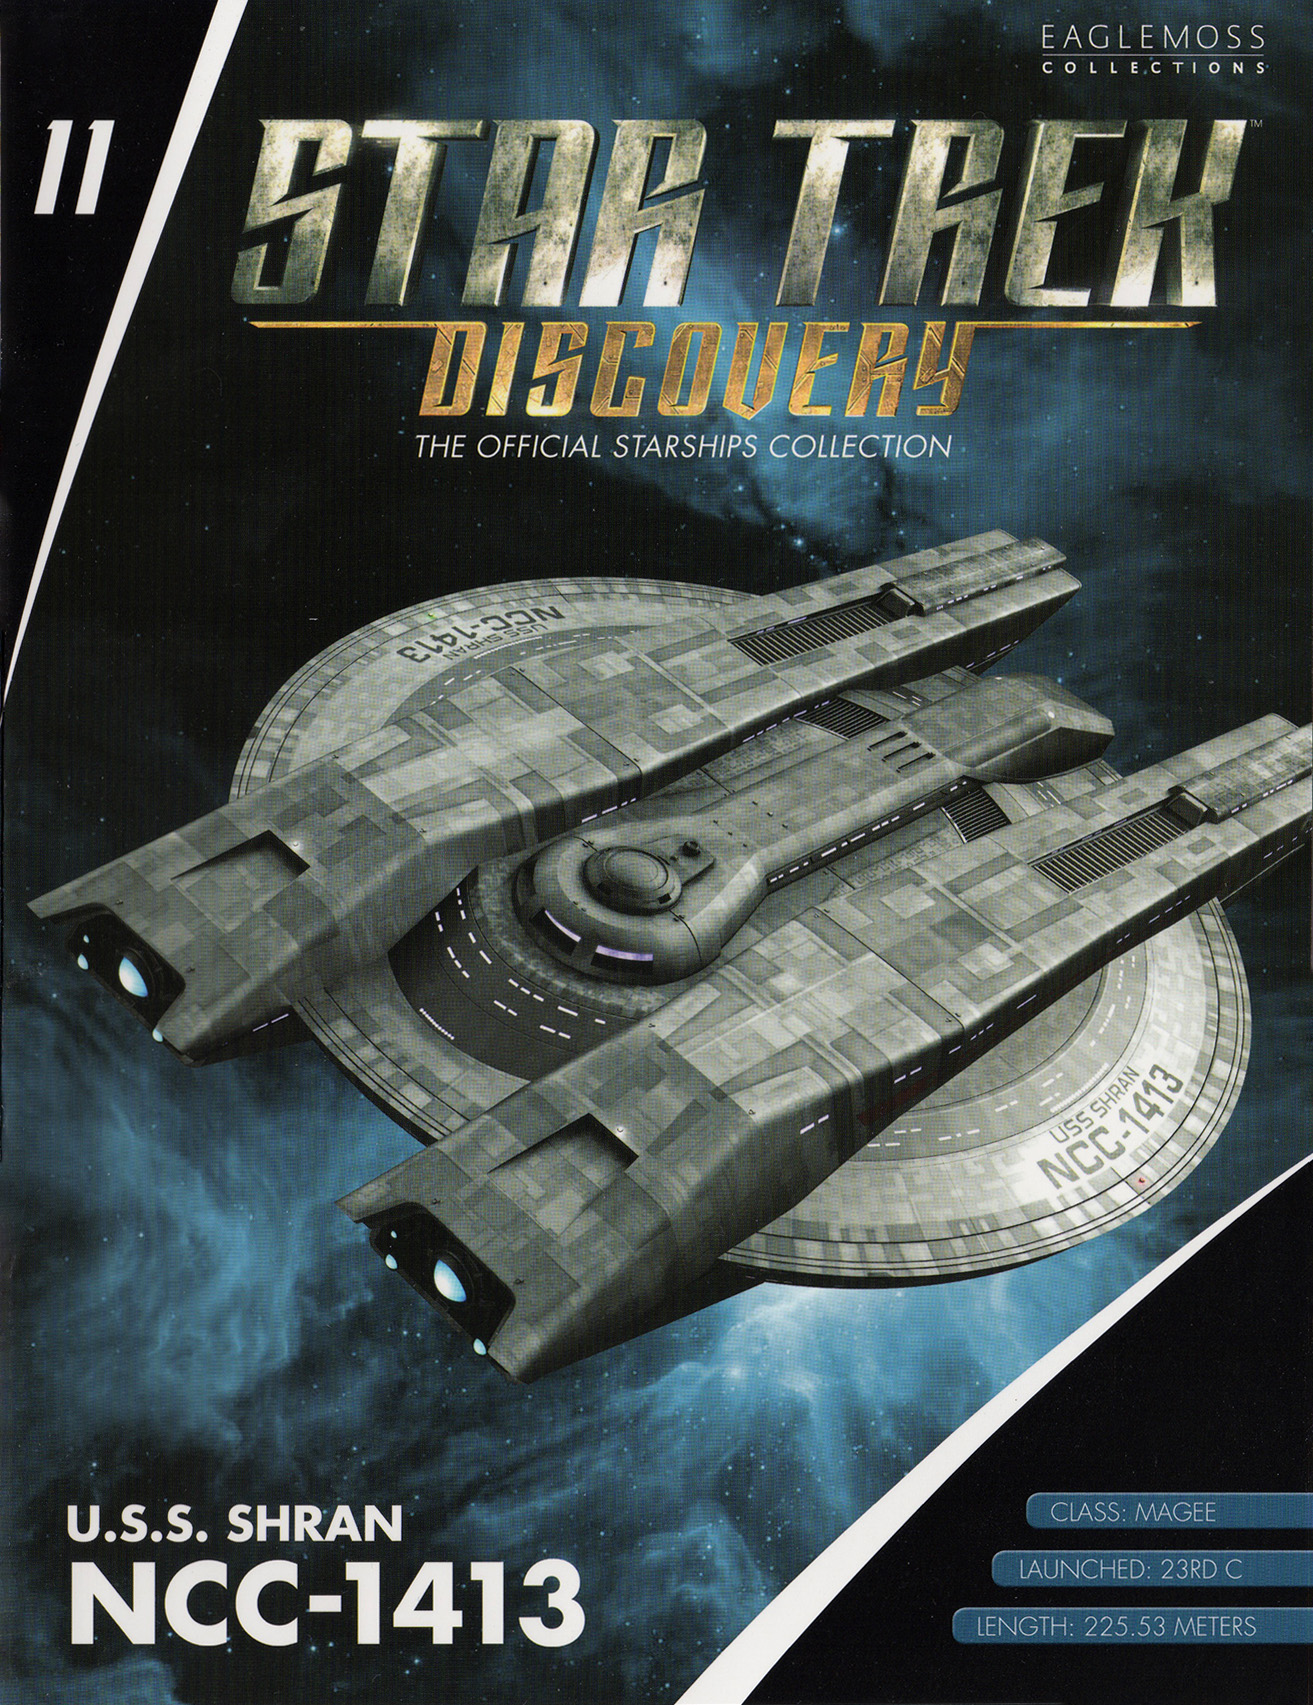 Eaglemoss Star Trek Starships Discovery Issue 11